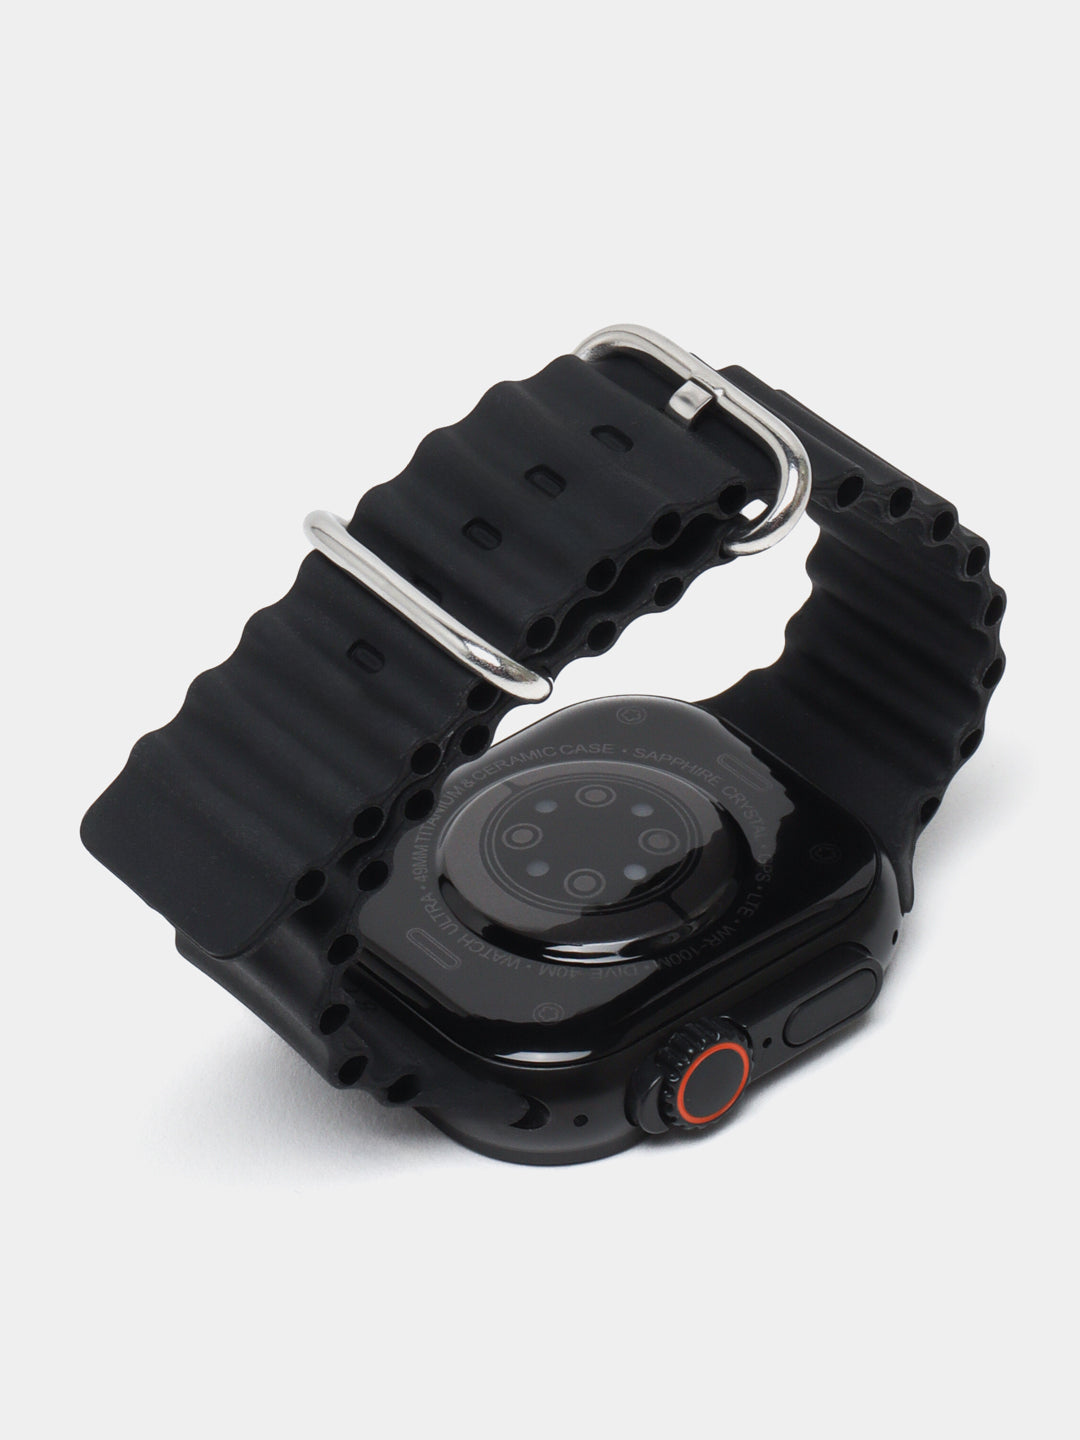 Οικονομικό Smart watch T900-Hk49